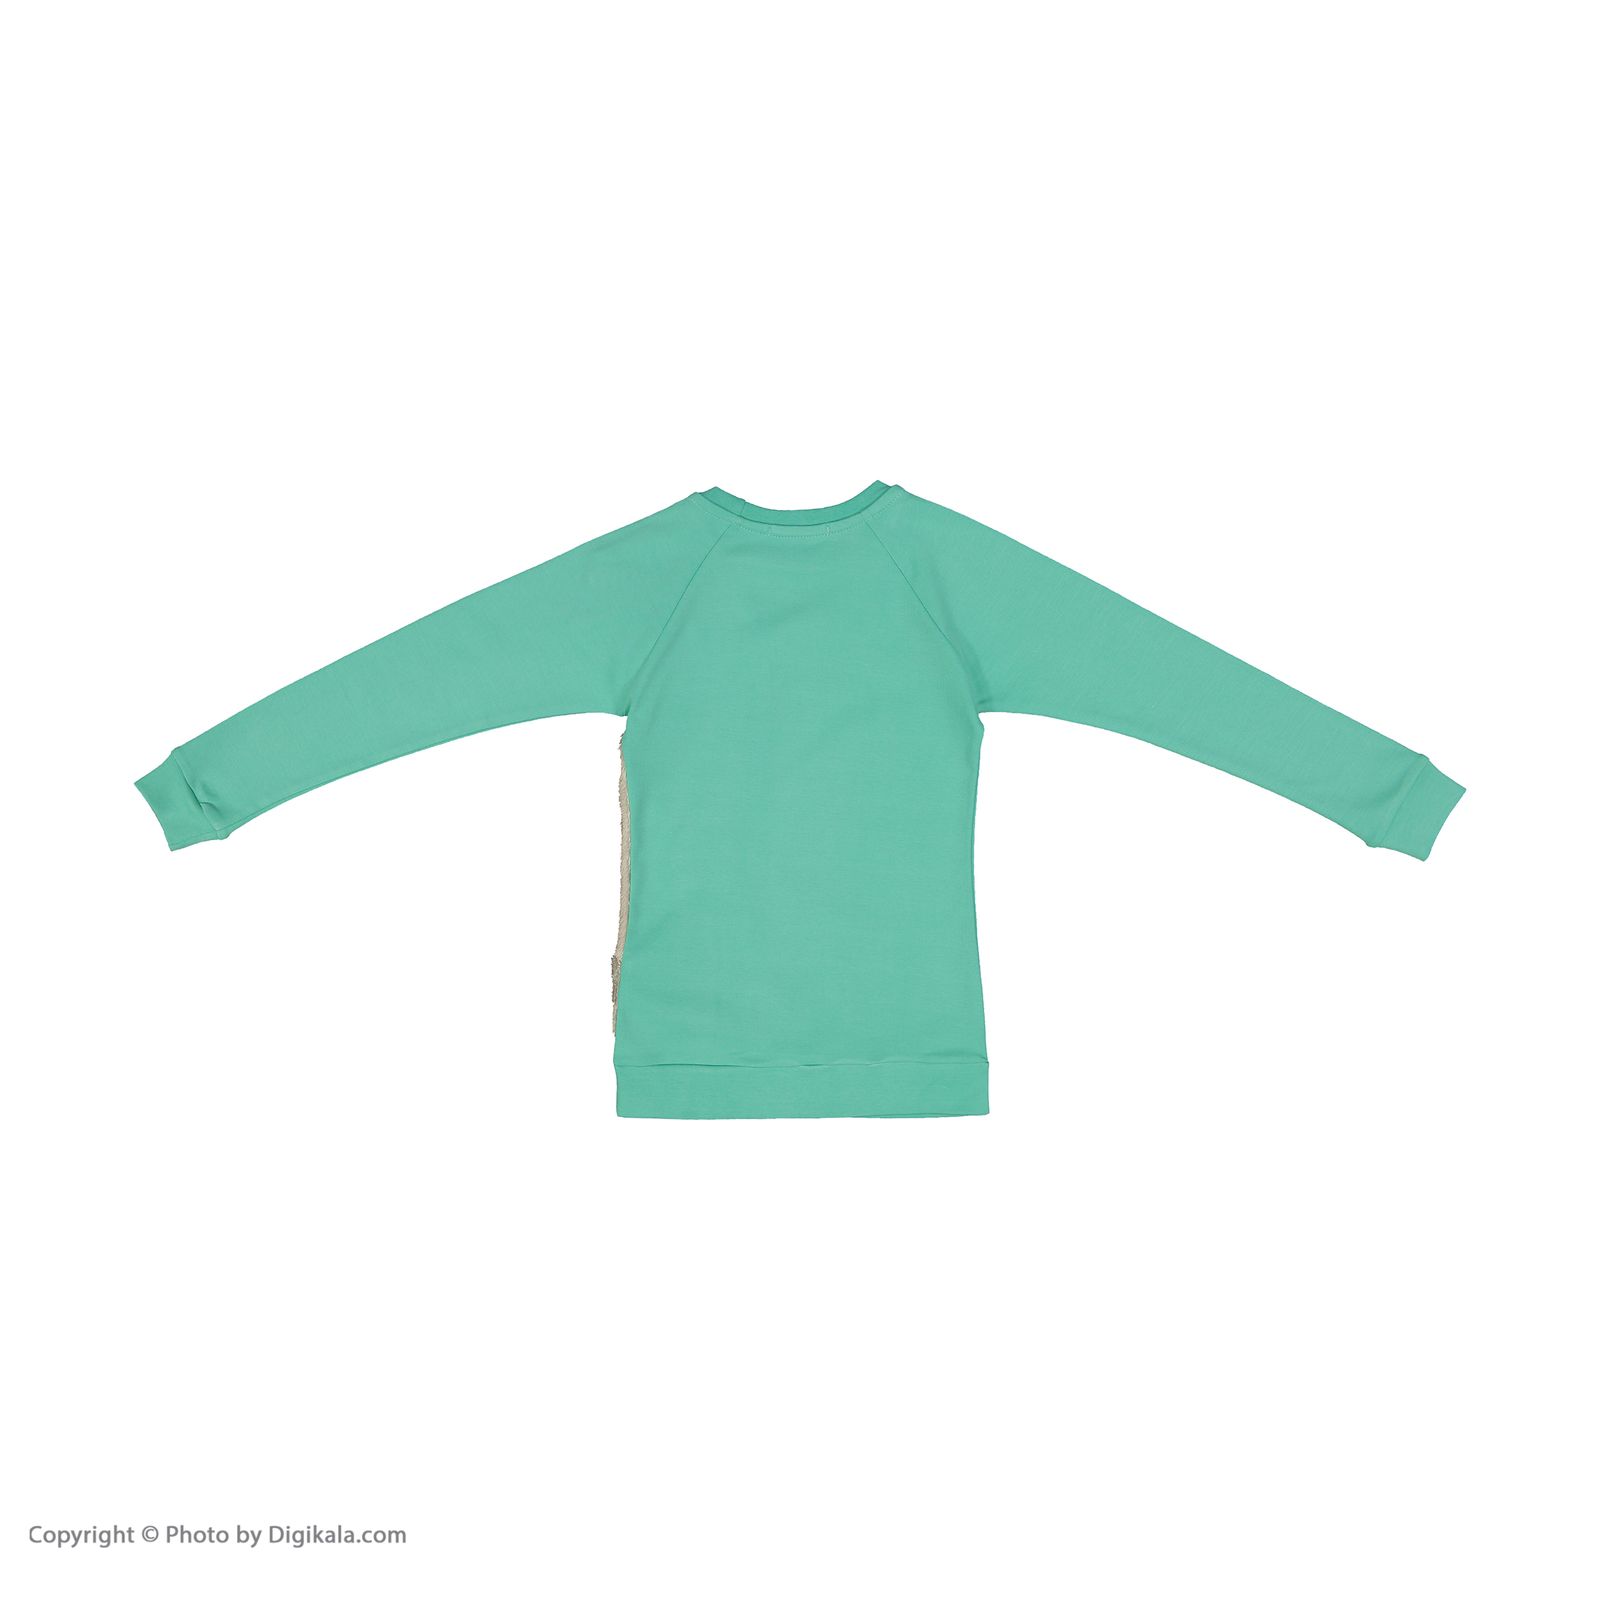 ست تی شرت و شلوار دخترانه مادر مدل SherryTurquoise-54 -  - 4